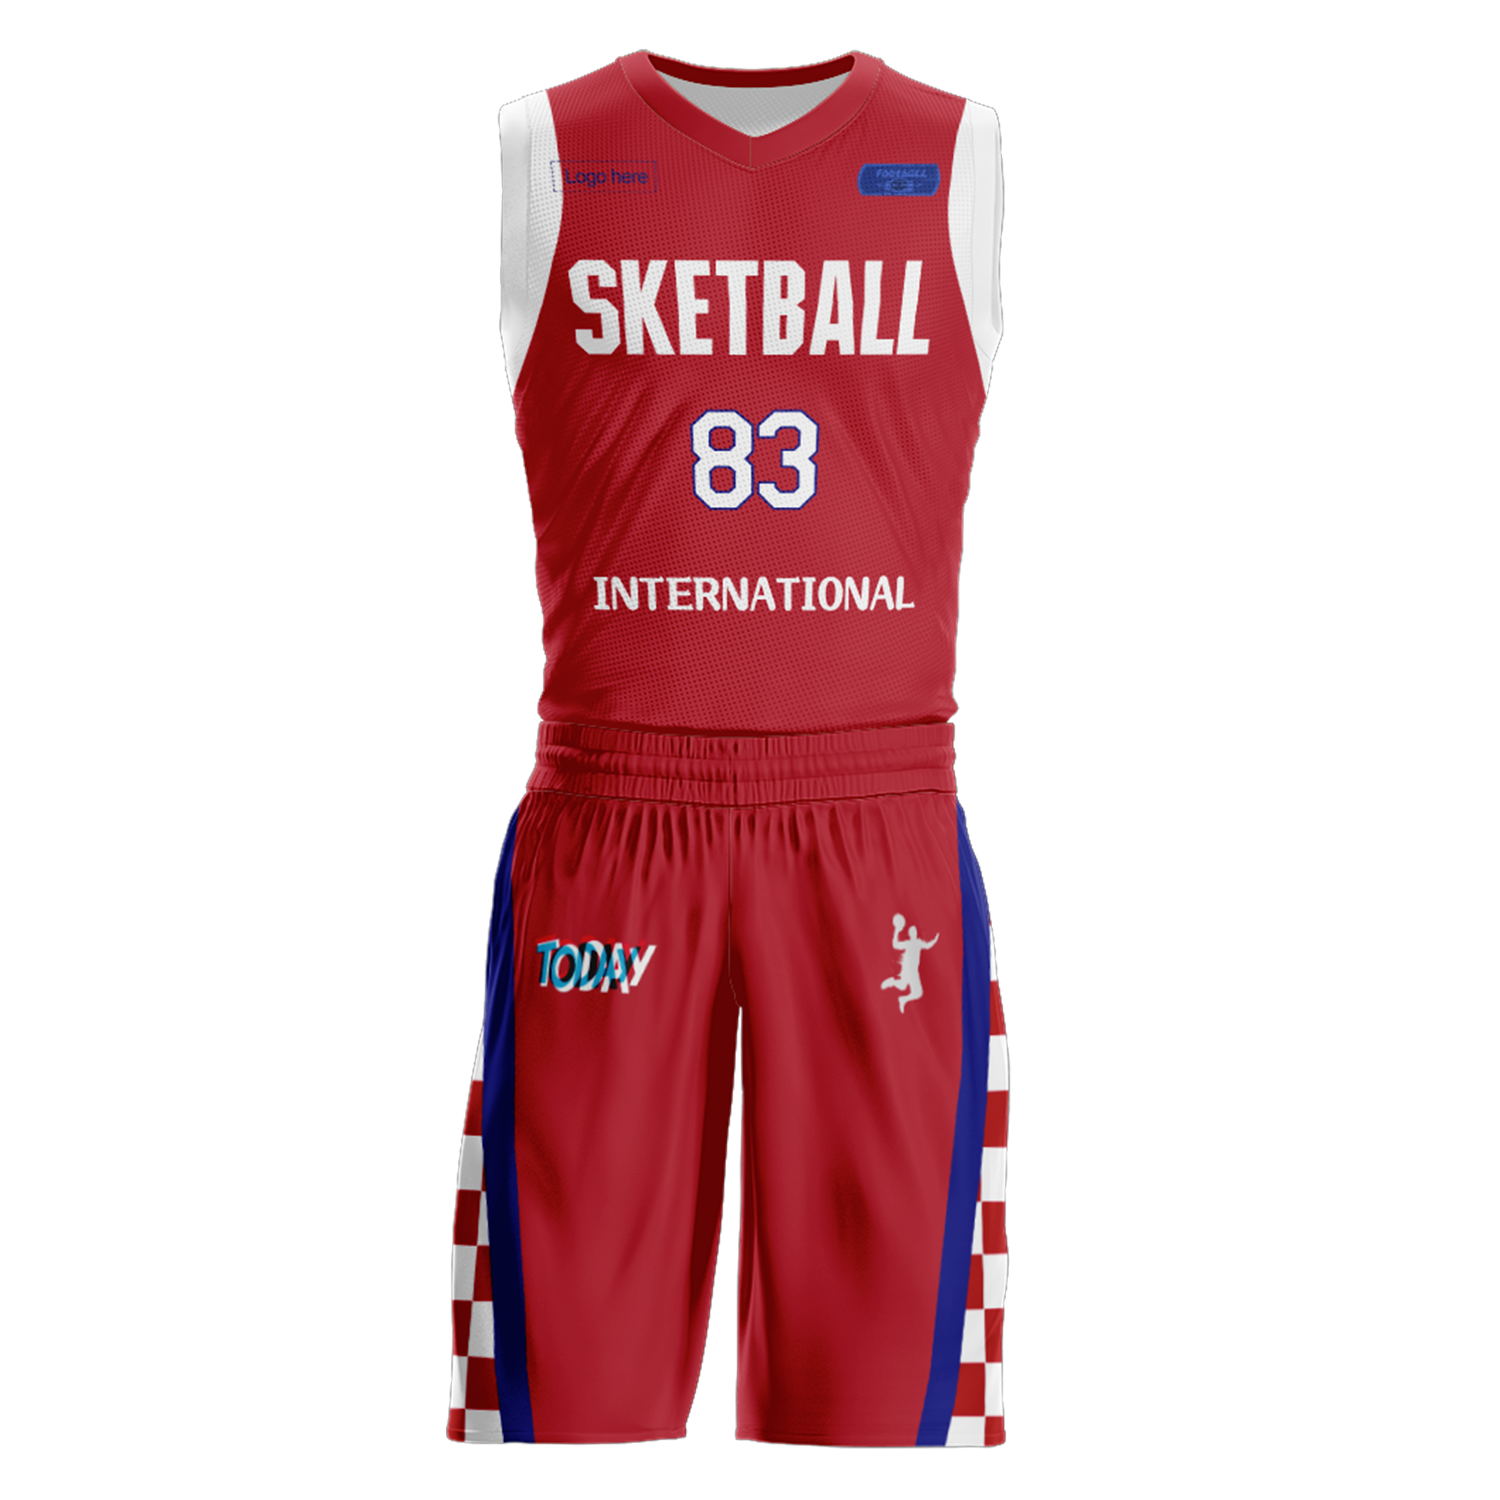 Kundenspezifische Kroatien-Team-Basketballanzüge